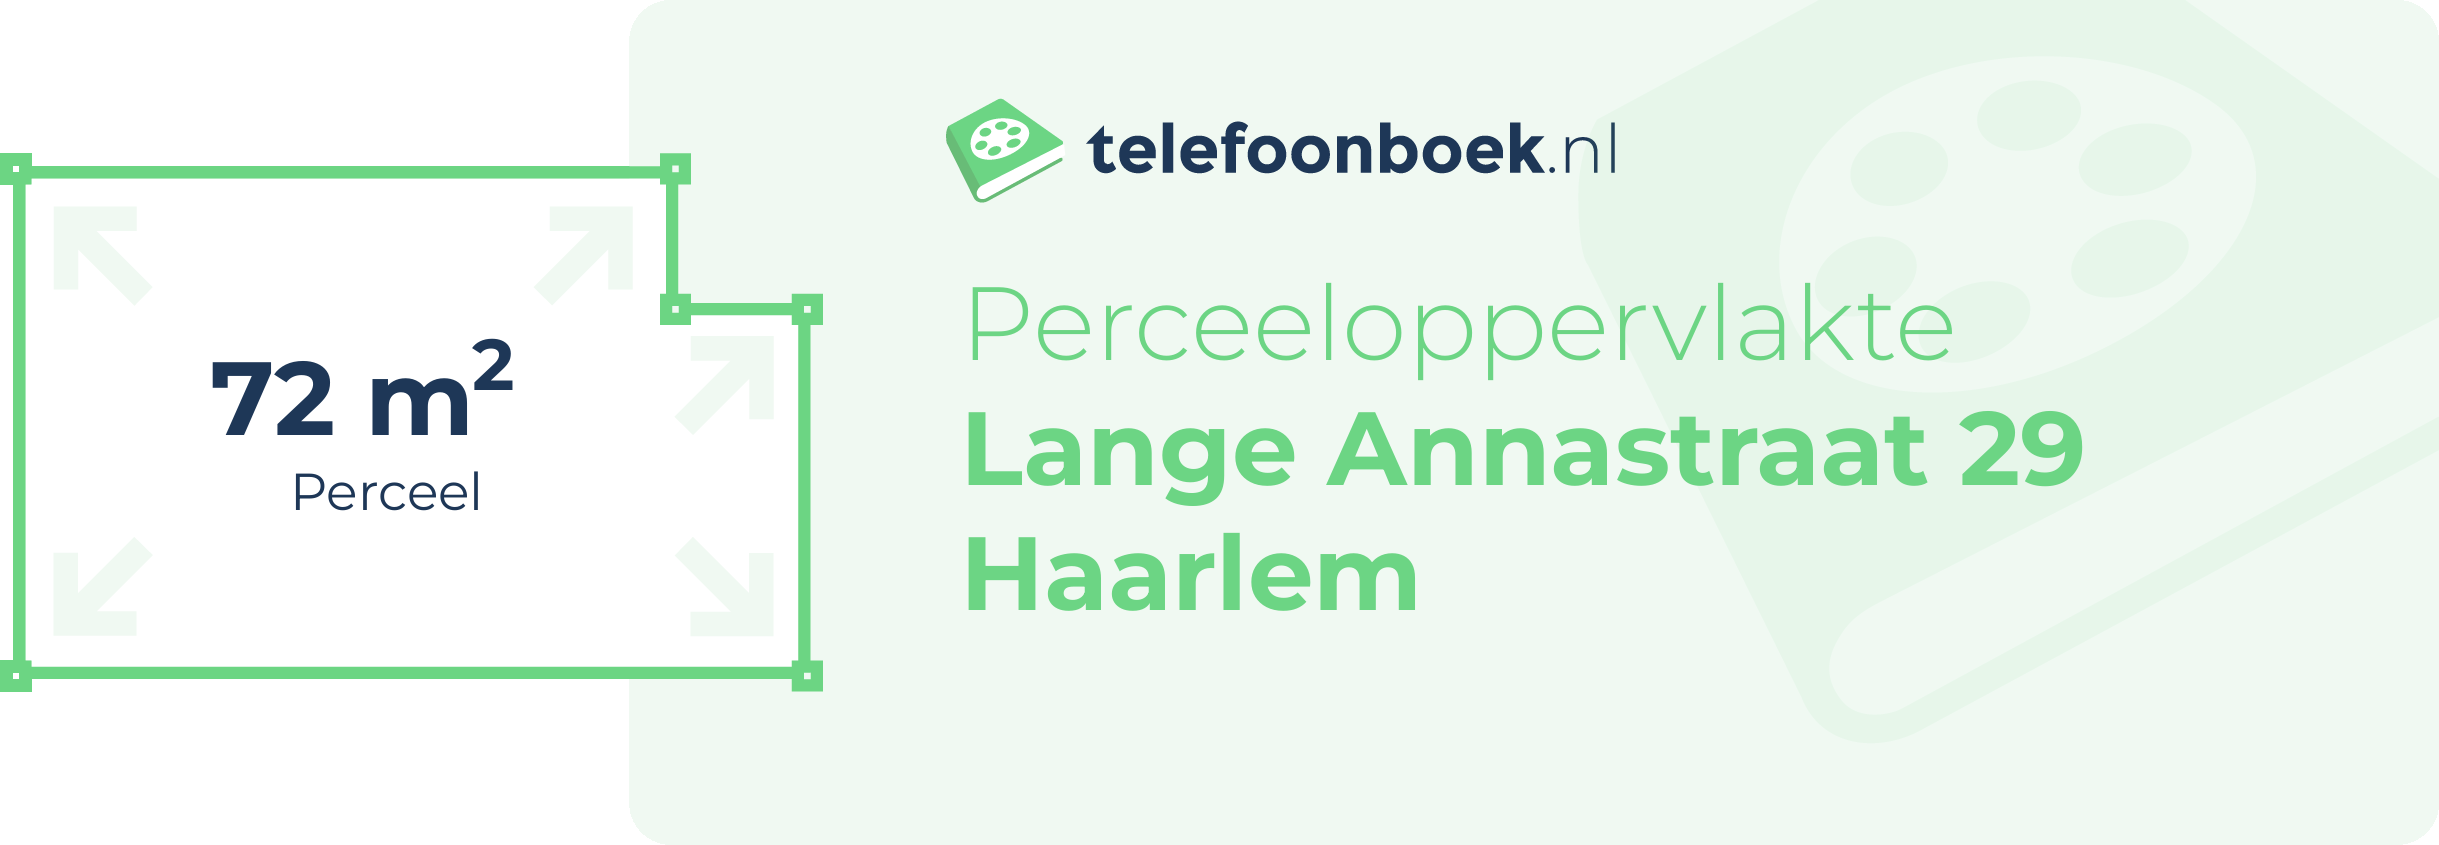 Perceeloppervlakte Lange Annastraat 29 Haarlem